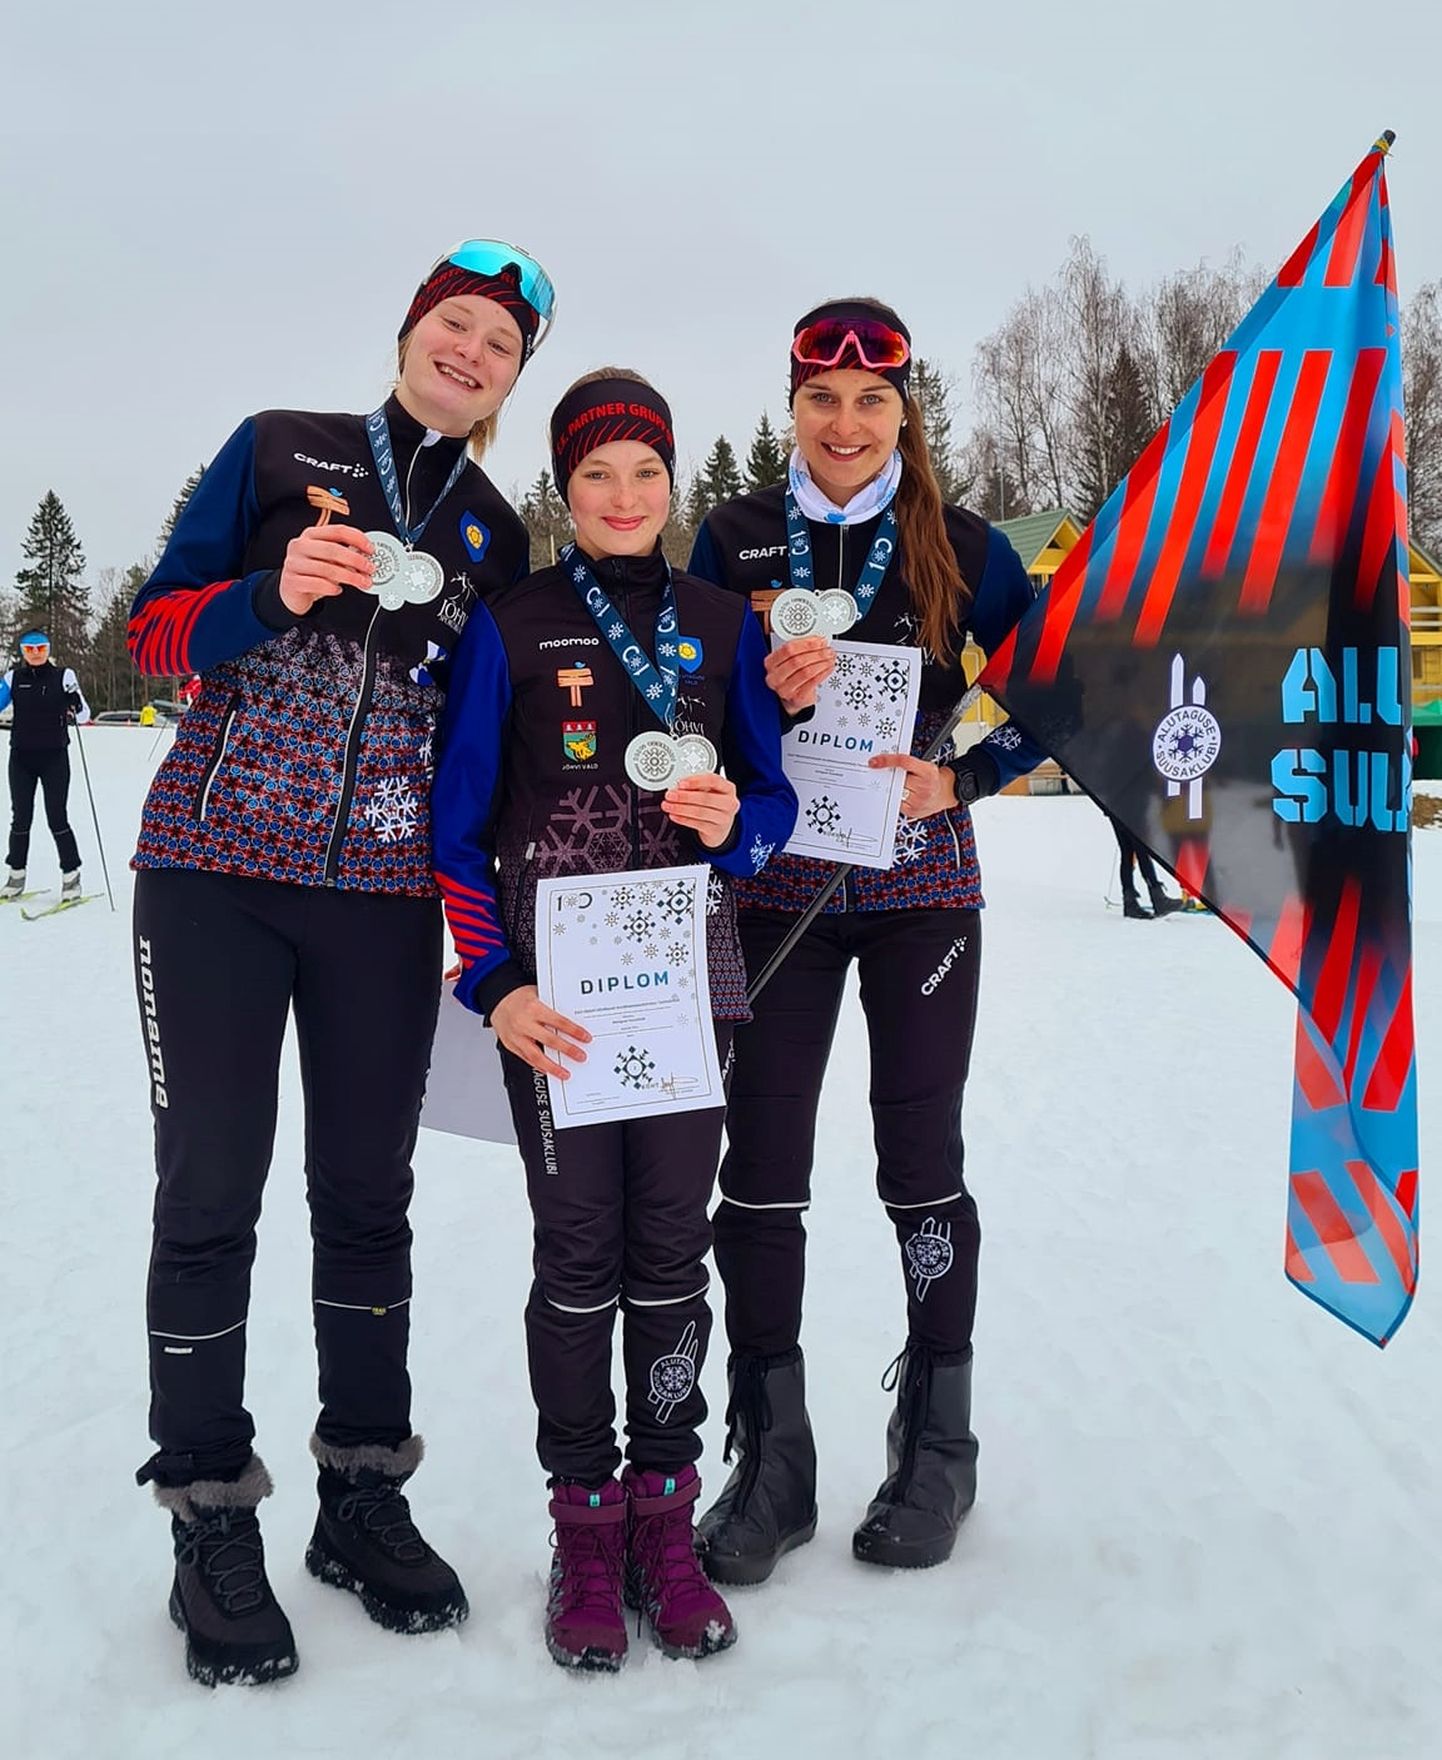 Eesti täiskasvanute meistrivõistlustel hõbemedali võitnud Alutaguse suusaklubi naiskonda kuulusid Herta Rajas, Anette Ahu ja Aveli Uustalu.